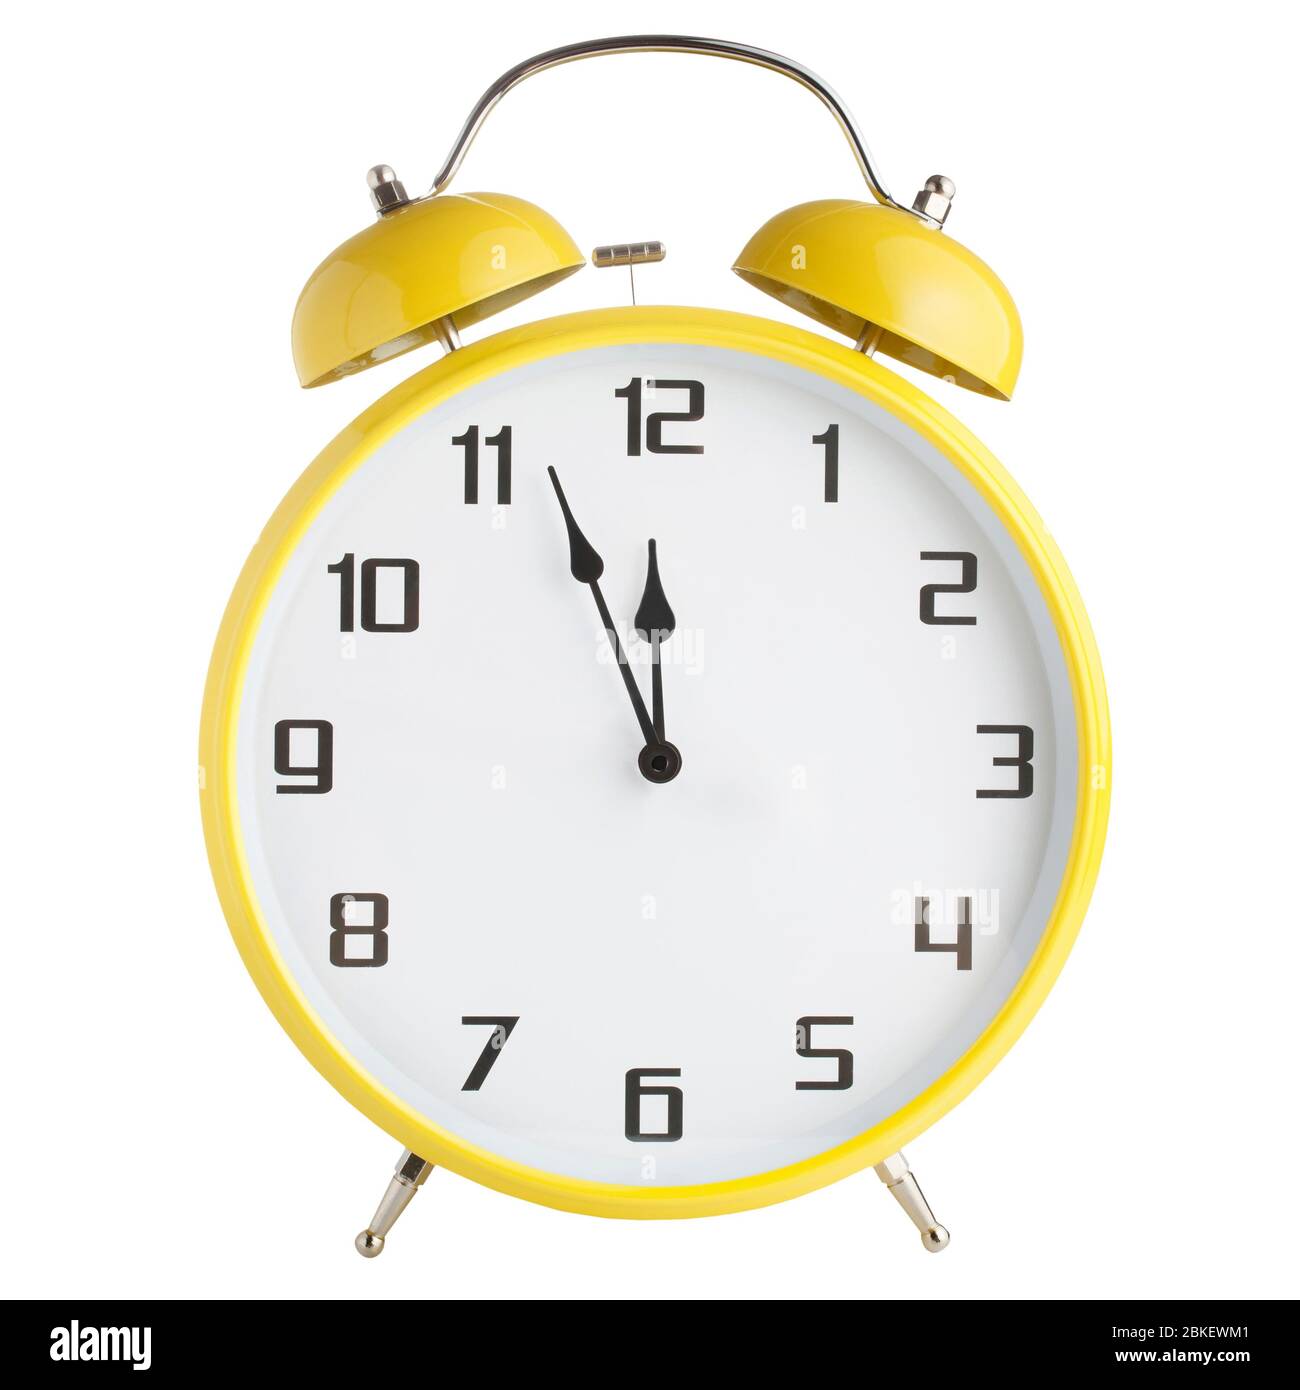 Analog yellow alarm clock isolated on white background Stock Photo